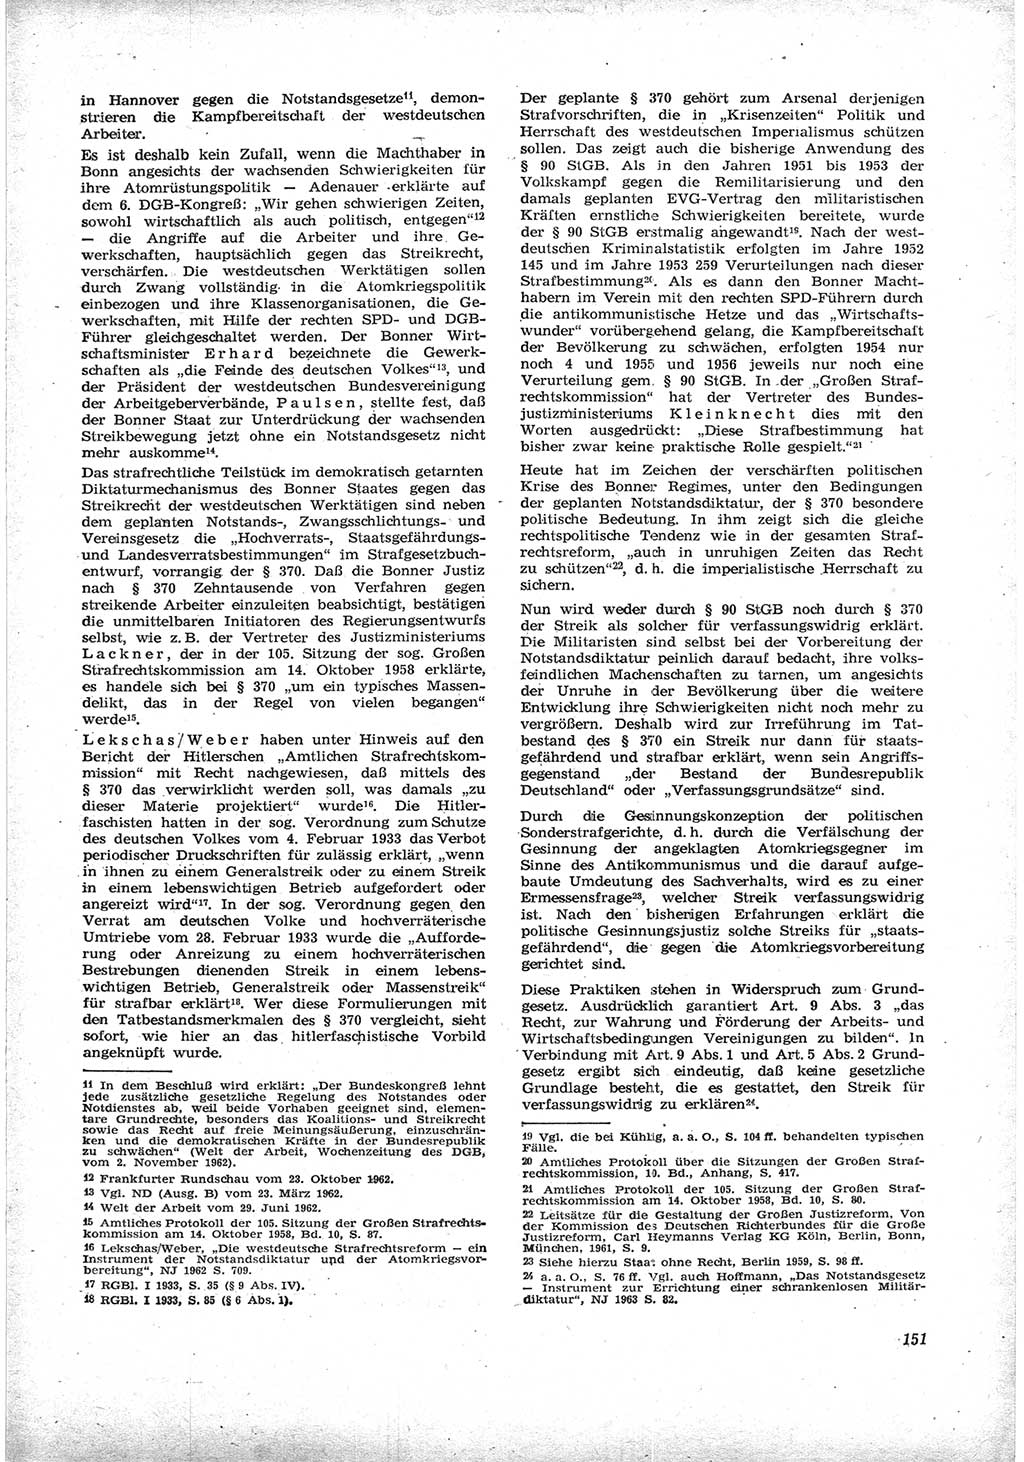 Neue Justiz (NJ), Zeitschrift für Recht und Rechtswissenschaft [Deutsche Demokratische Republik (DDR)], 17. Jahrgang 1963, Seite 151 (NJ DDR 1963, S. 151)